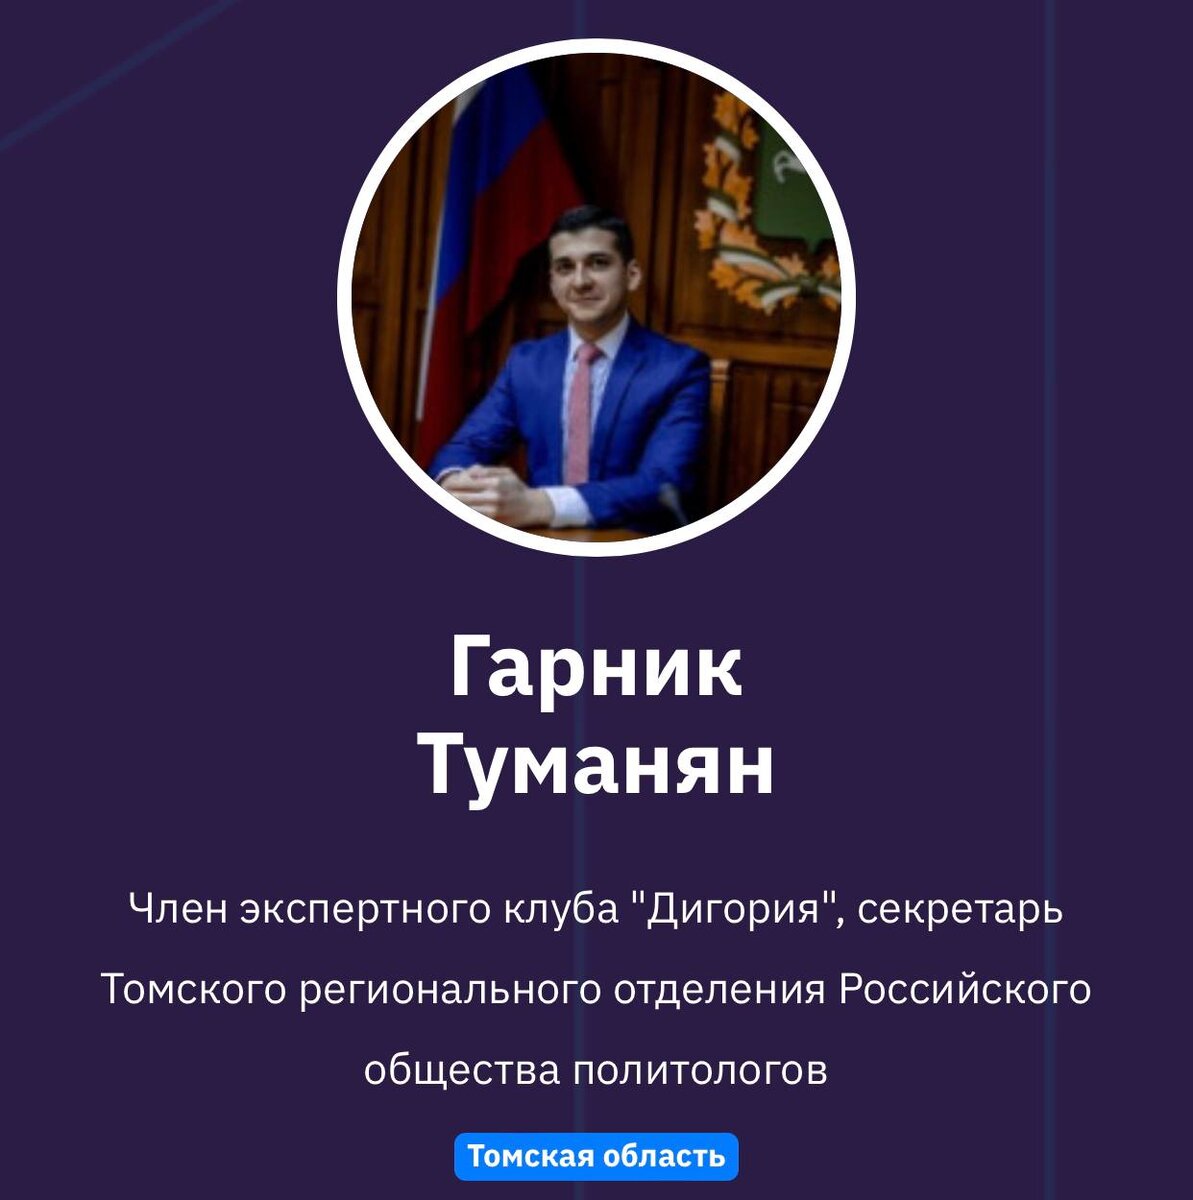 ПГС предложил кандидатуру Евгения Ревенко на должность ответственного секретаря Комиссии по этике